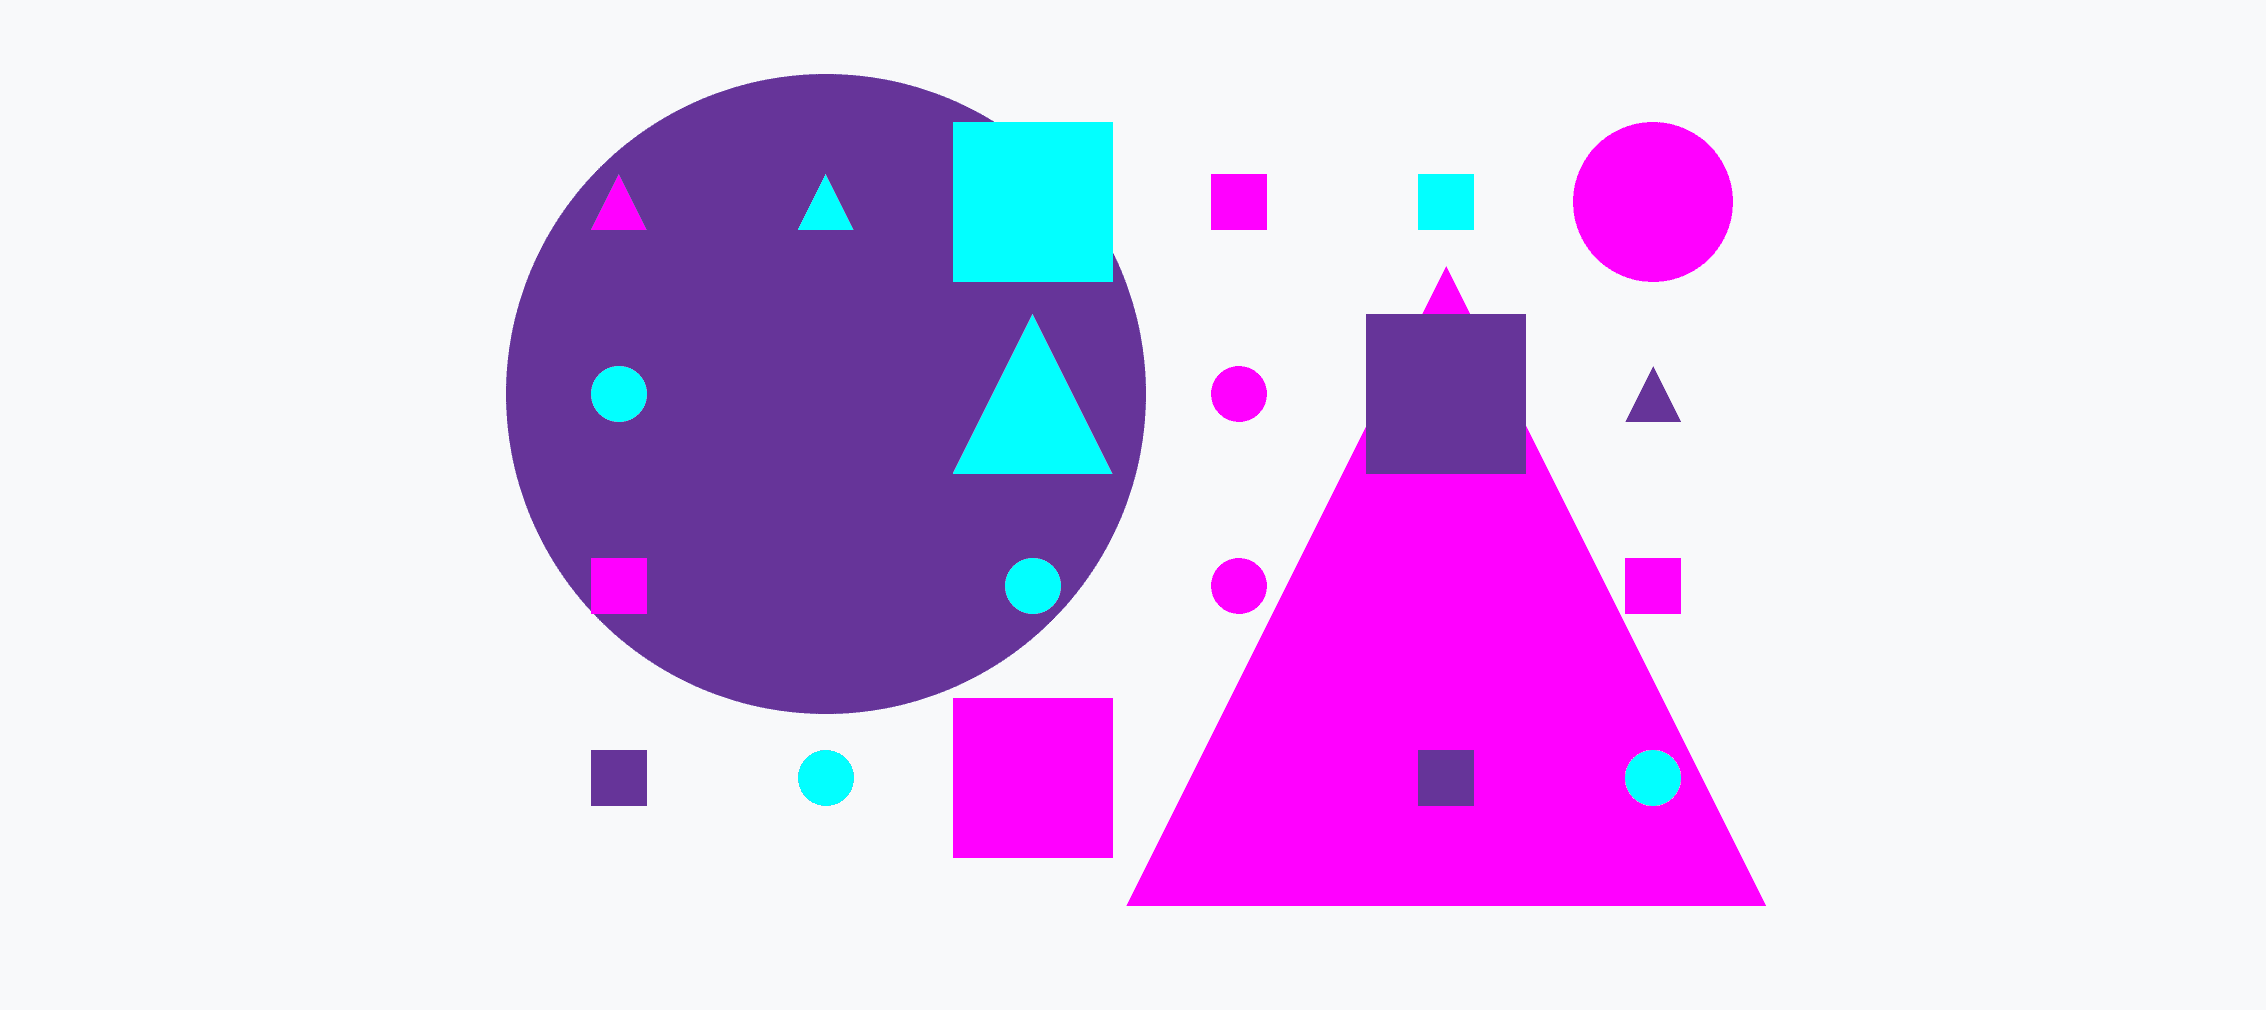 ตารางกริดสีสันสดใสที่ประกอบด้วยวงกลม สามเหลี่ยม และสี่เหลี่ยมจัตุรัสขนาดเล็กและใหญ่